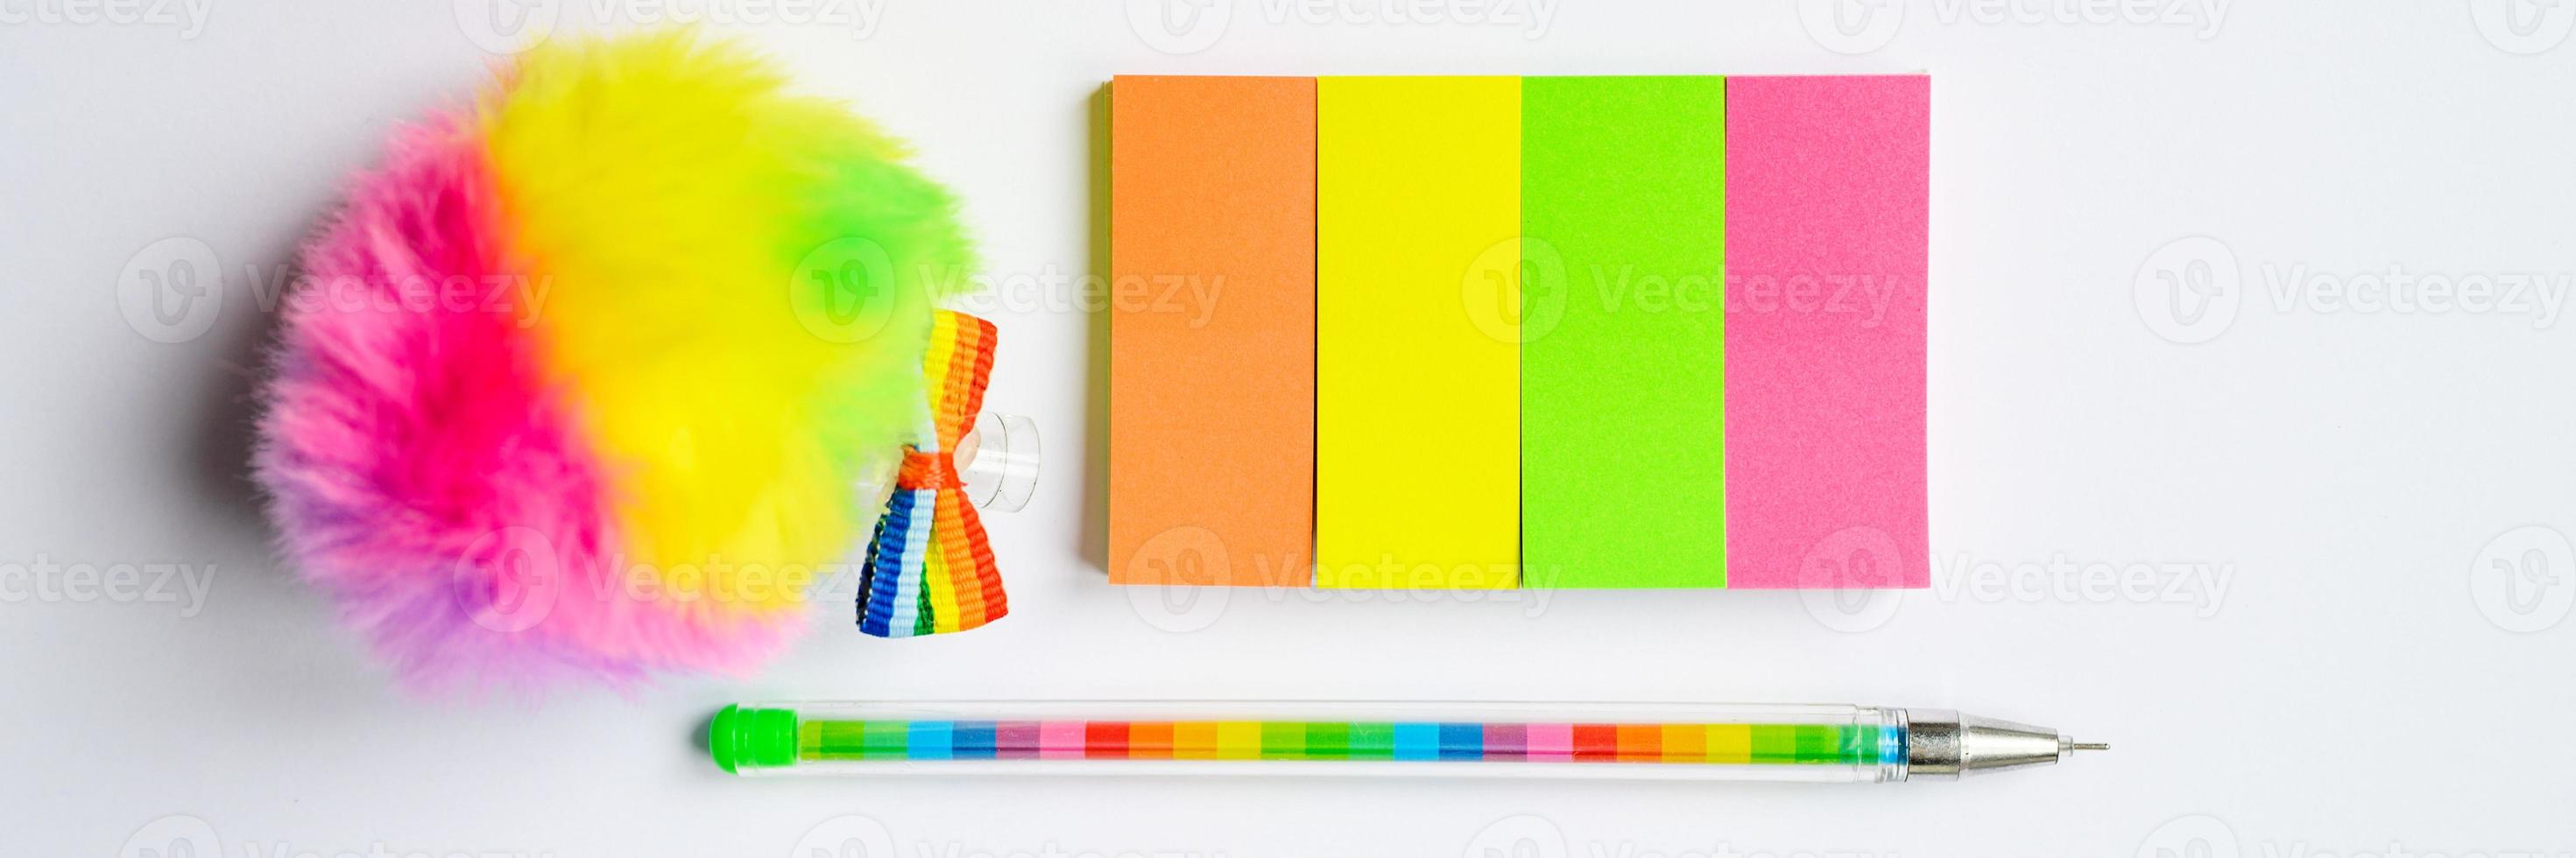 adesivi multicolori e una penna su sfondo bianco foto